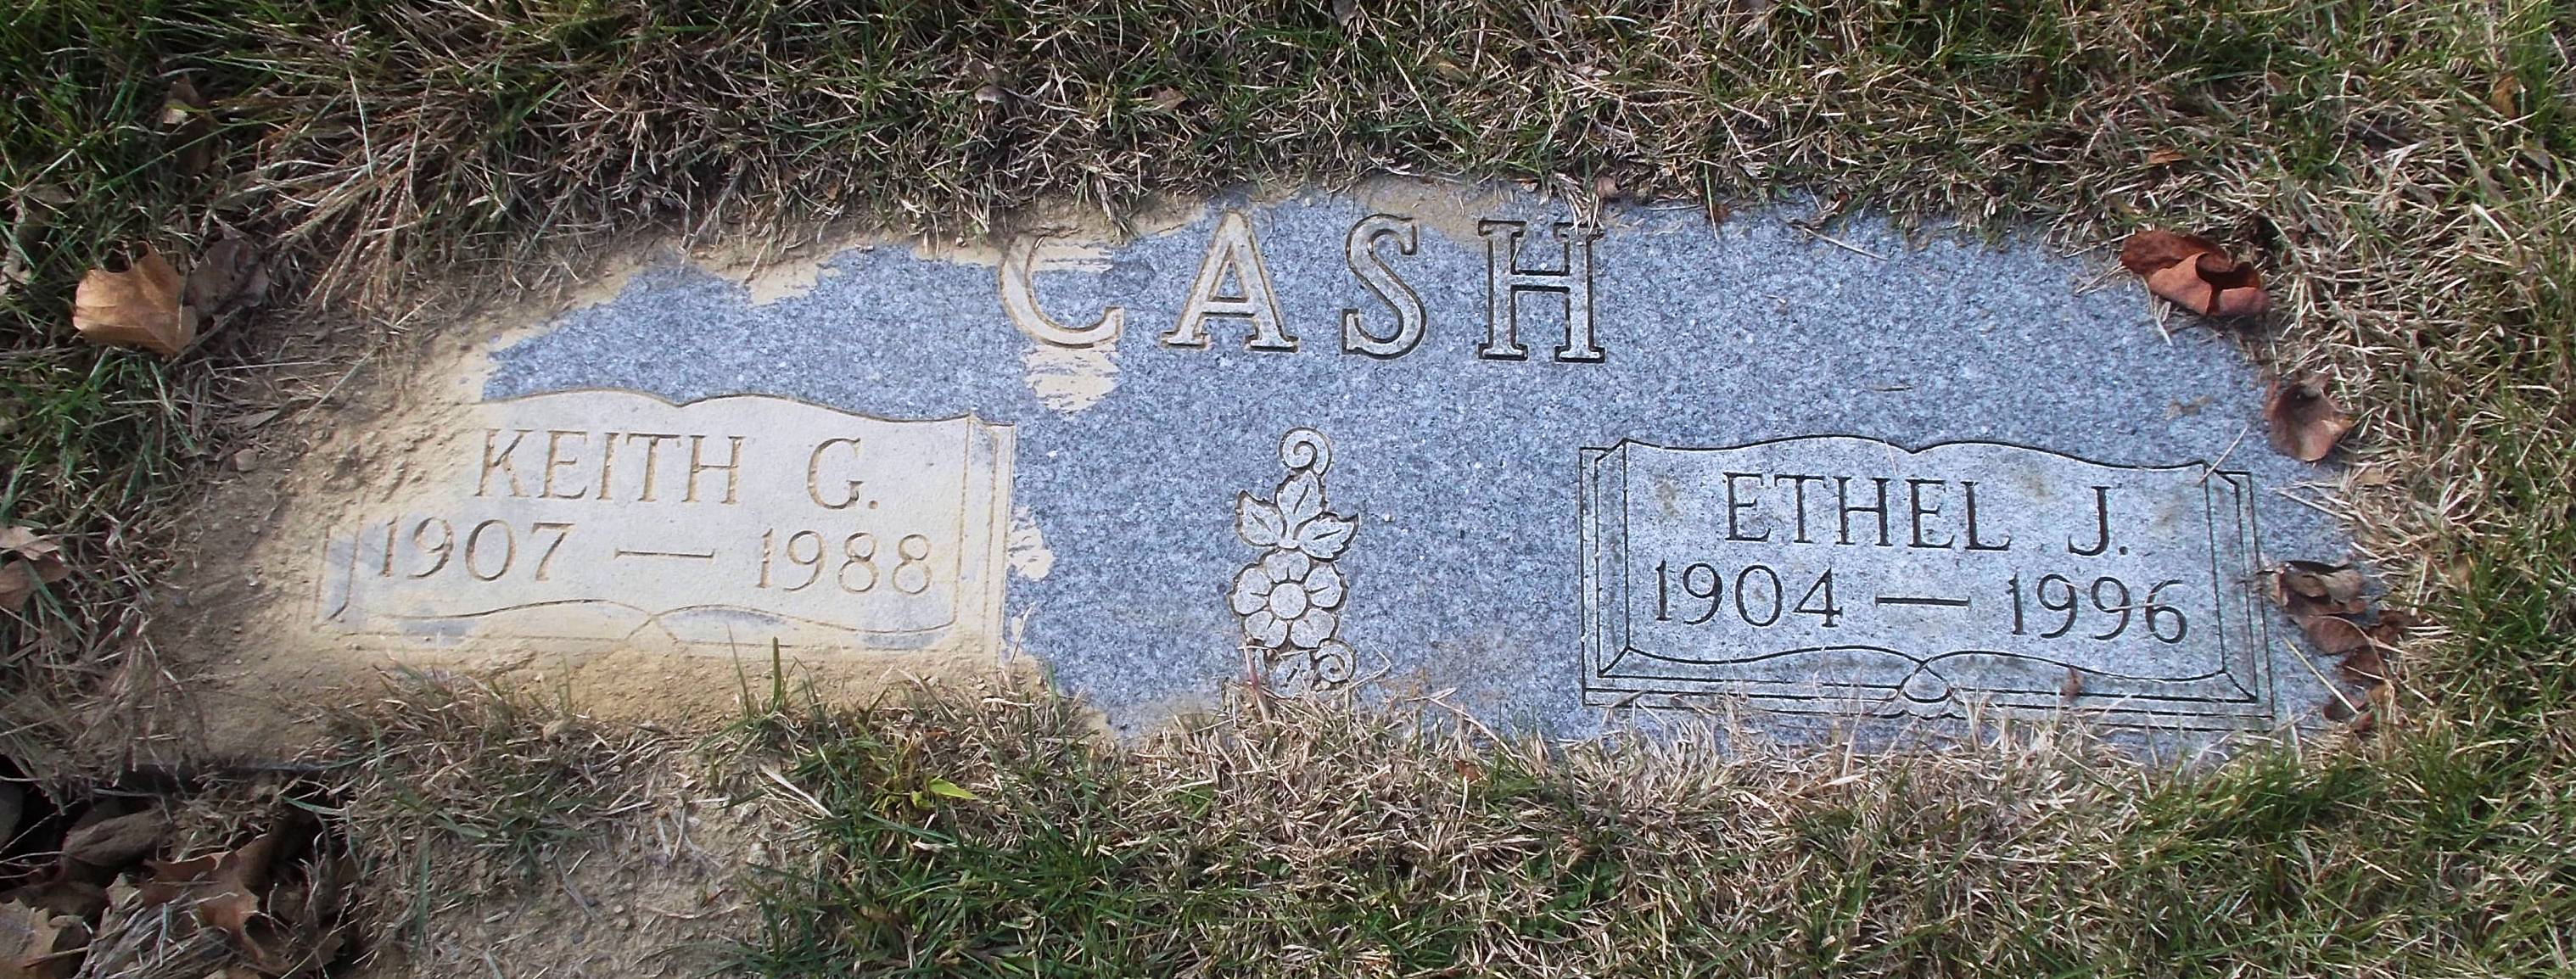 Ethel J Cash